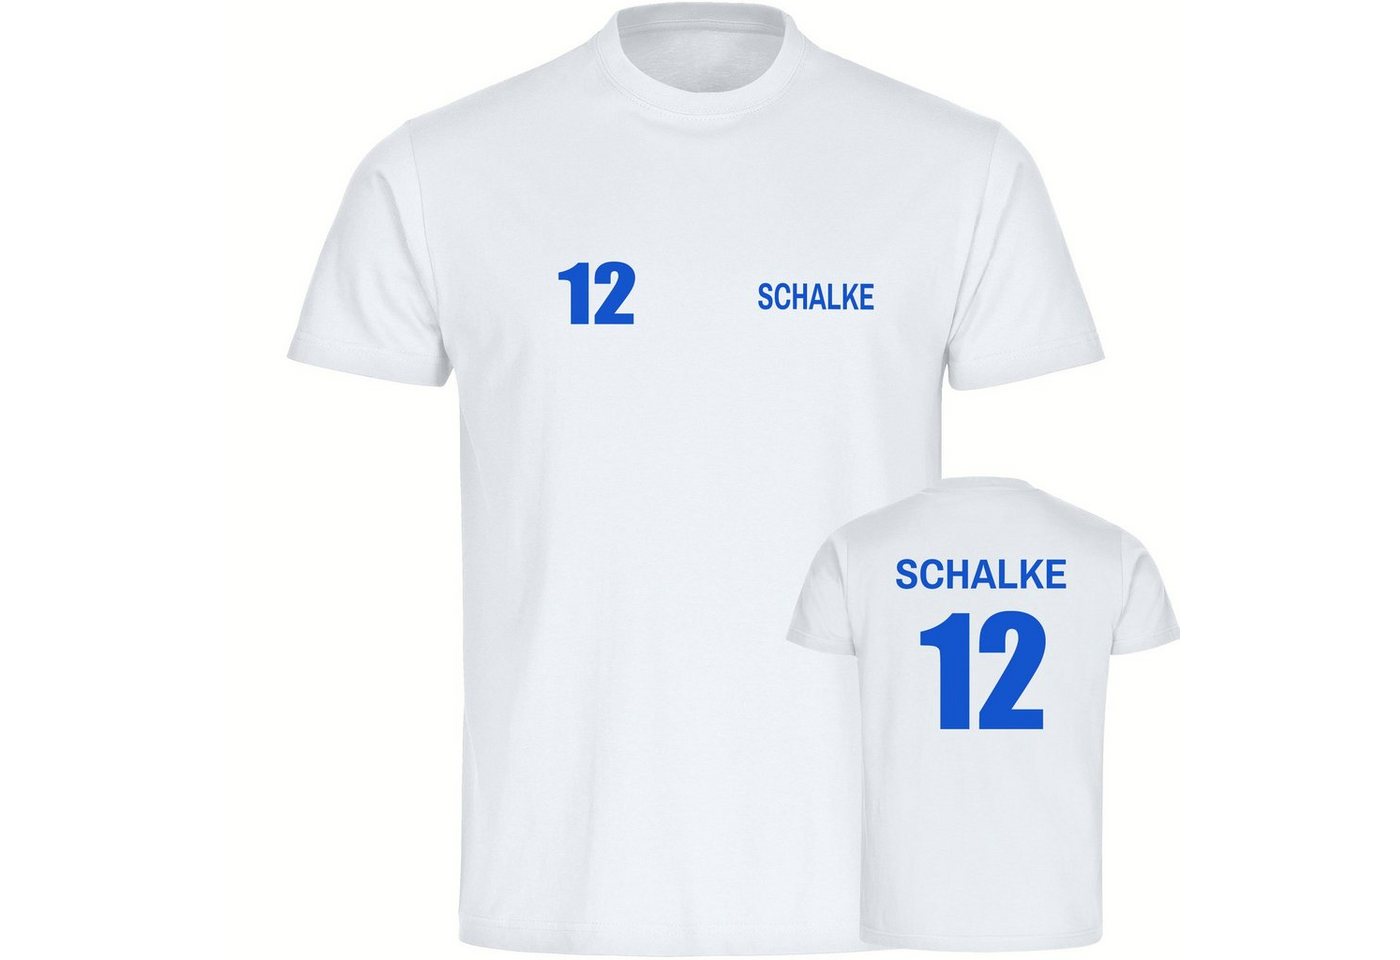 multifanshop T-Shirt Kinder Schalke - Trikot 12 - Boy Girl von multifanshop